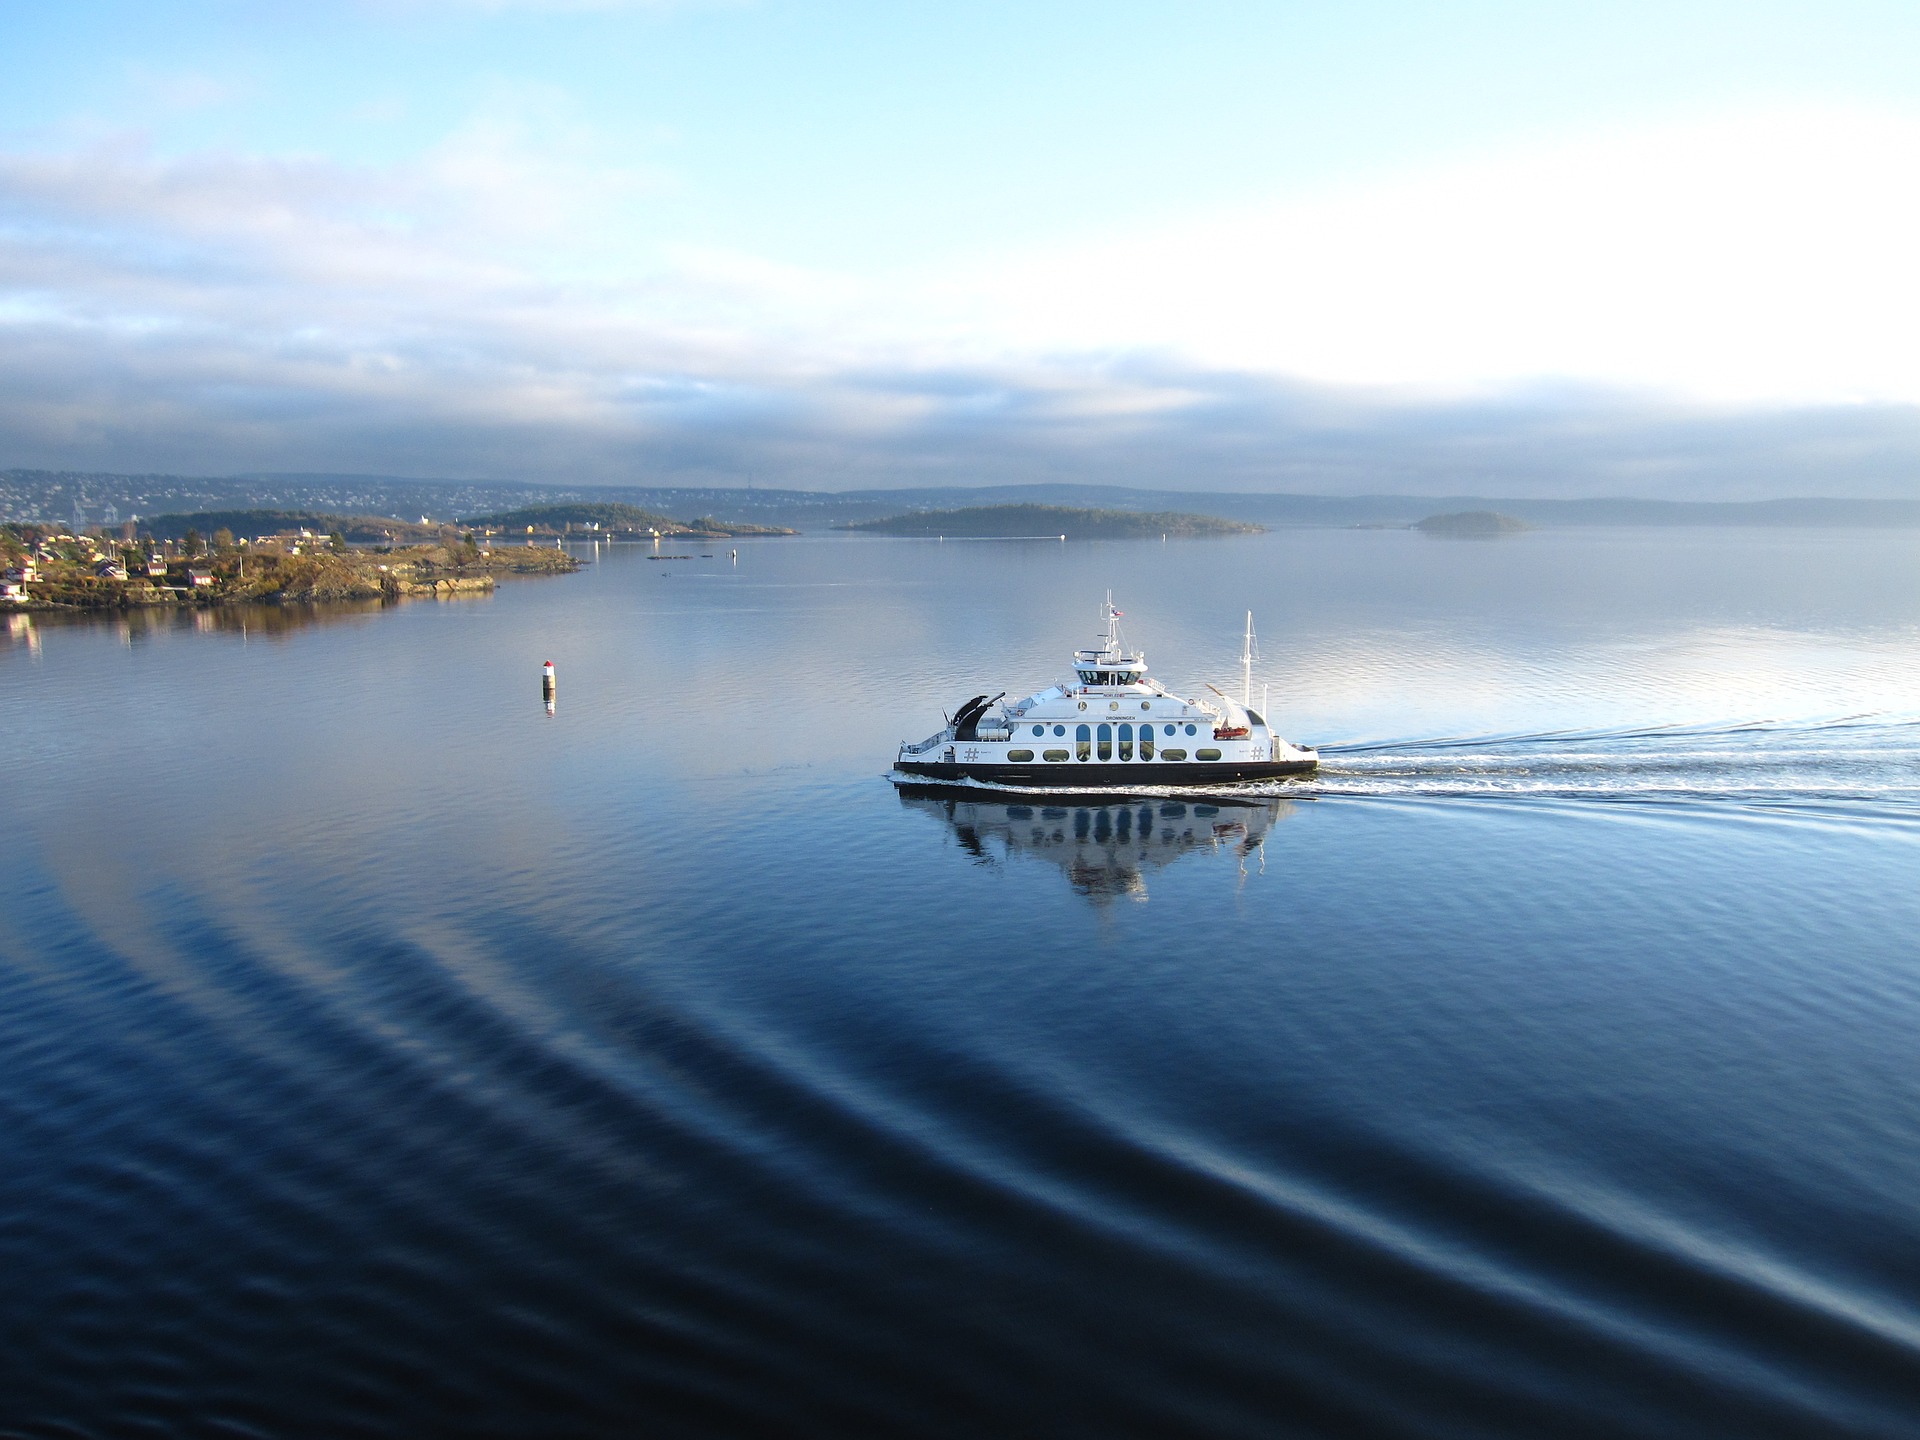 Schiffsrundfahrten sind während einer Städtereise in Oslo sehr gefragt